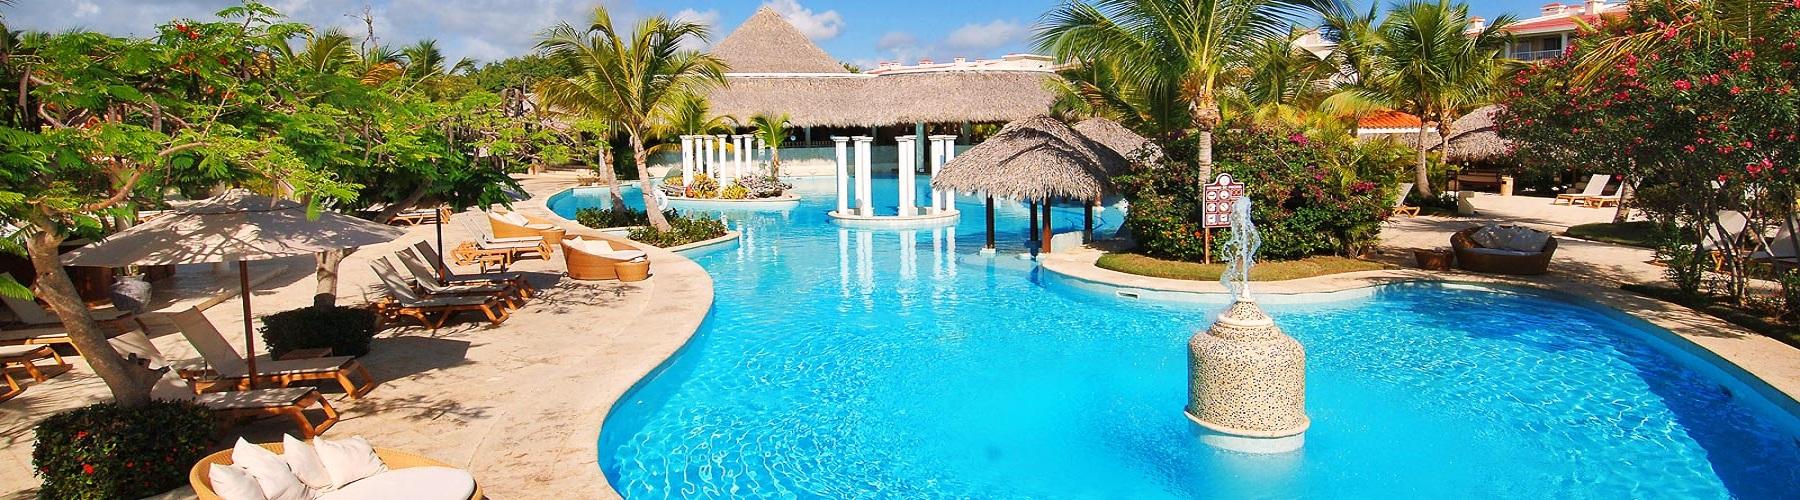 Отель Melia Caribe Beach Resort 5*